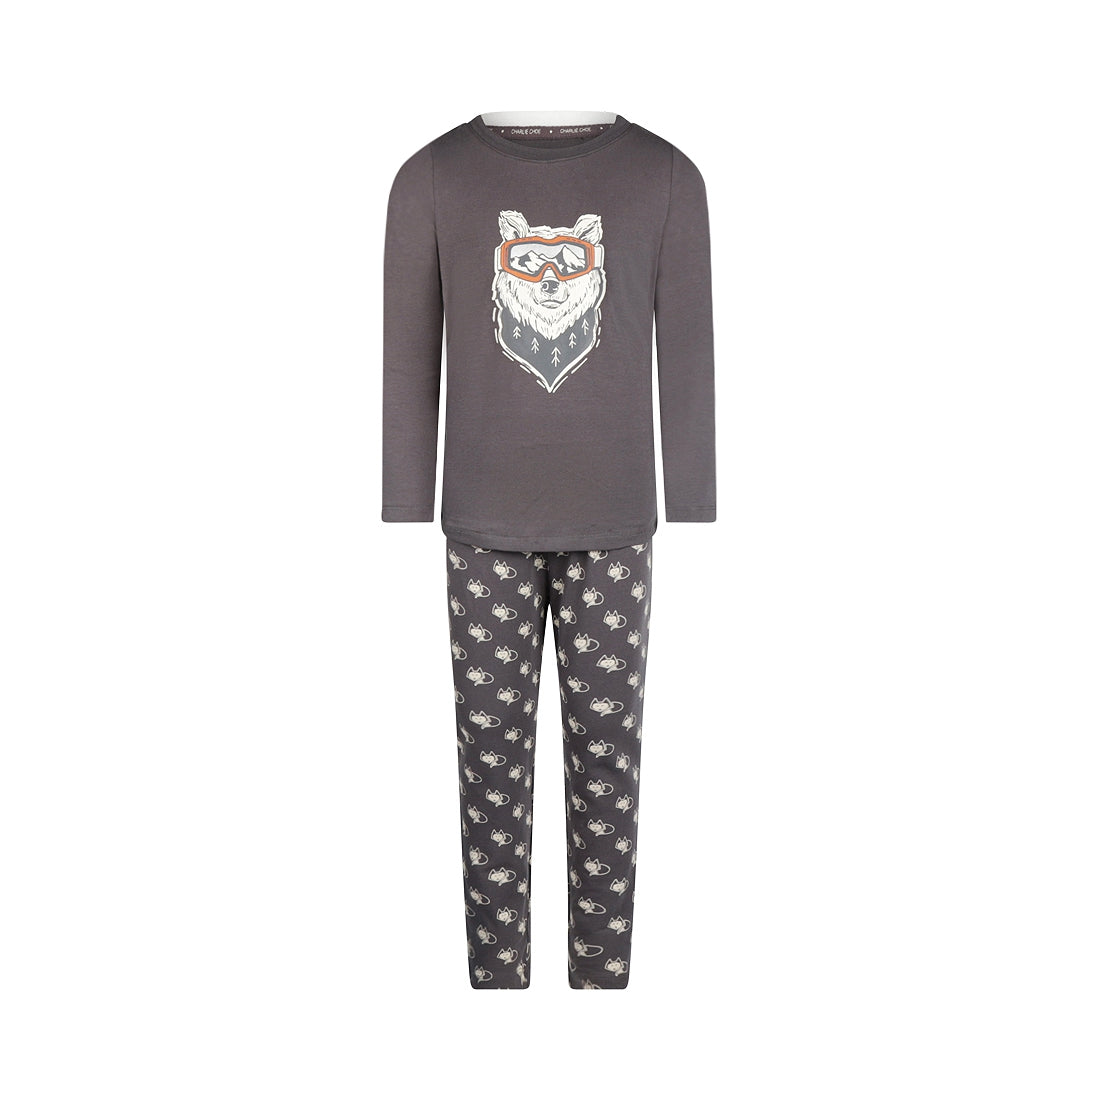 Jongens Boys pyjama set van Charlie Choe in de kleur Dark grey in maat 158-164.